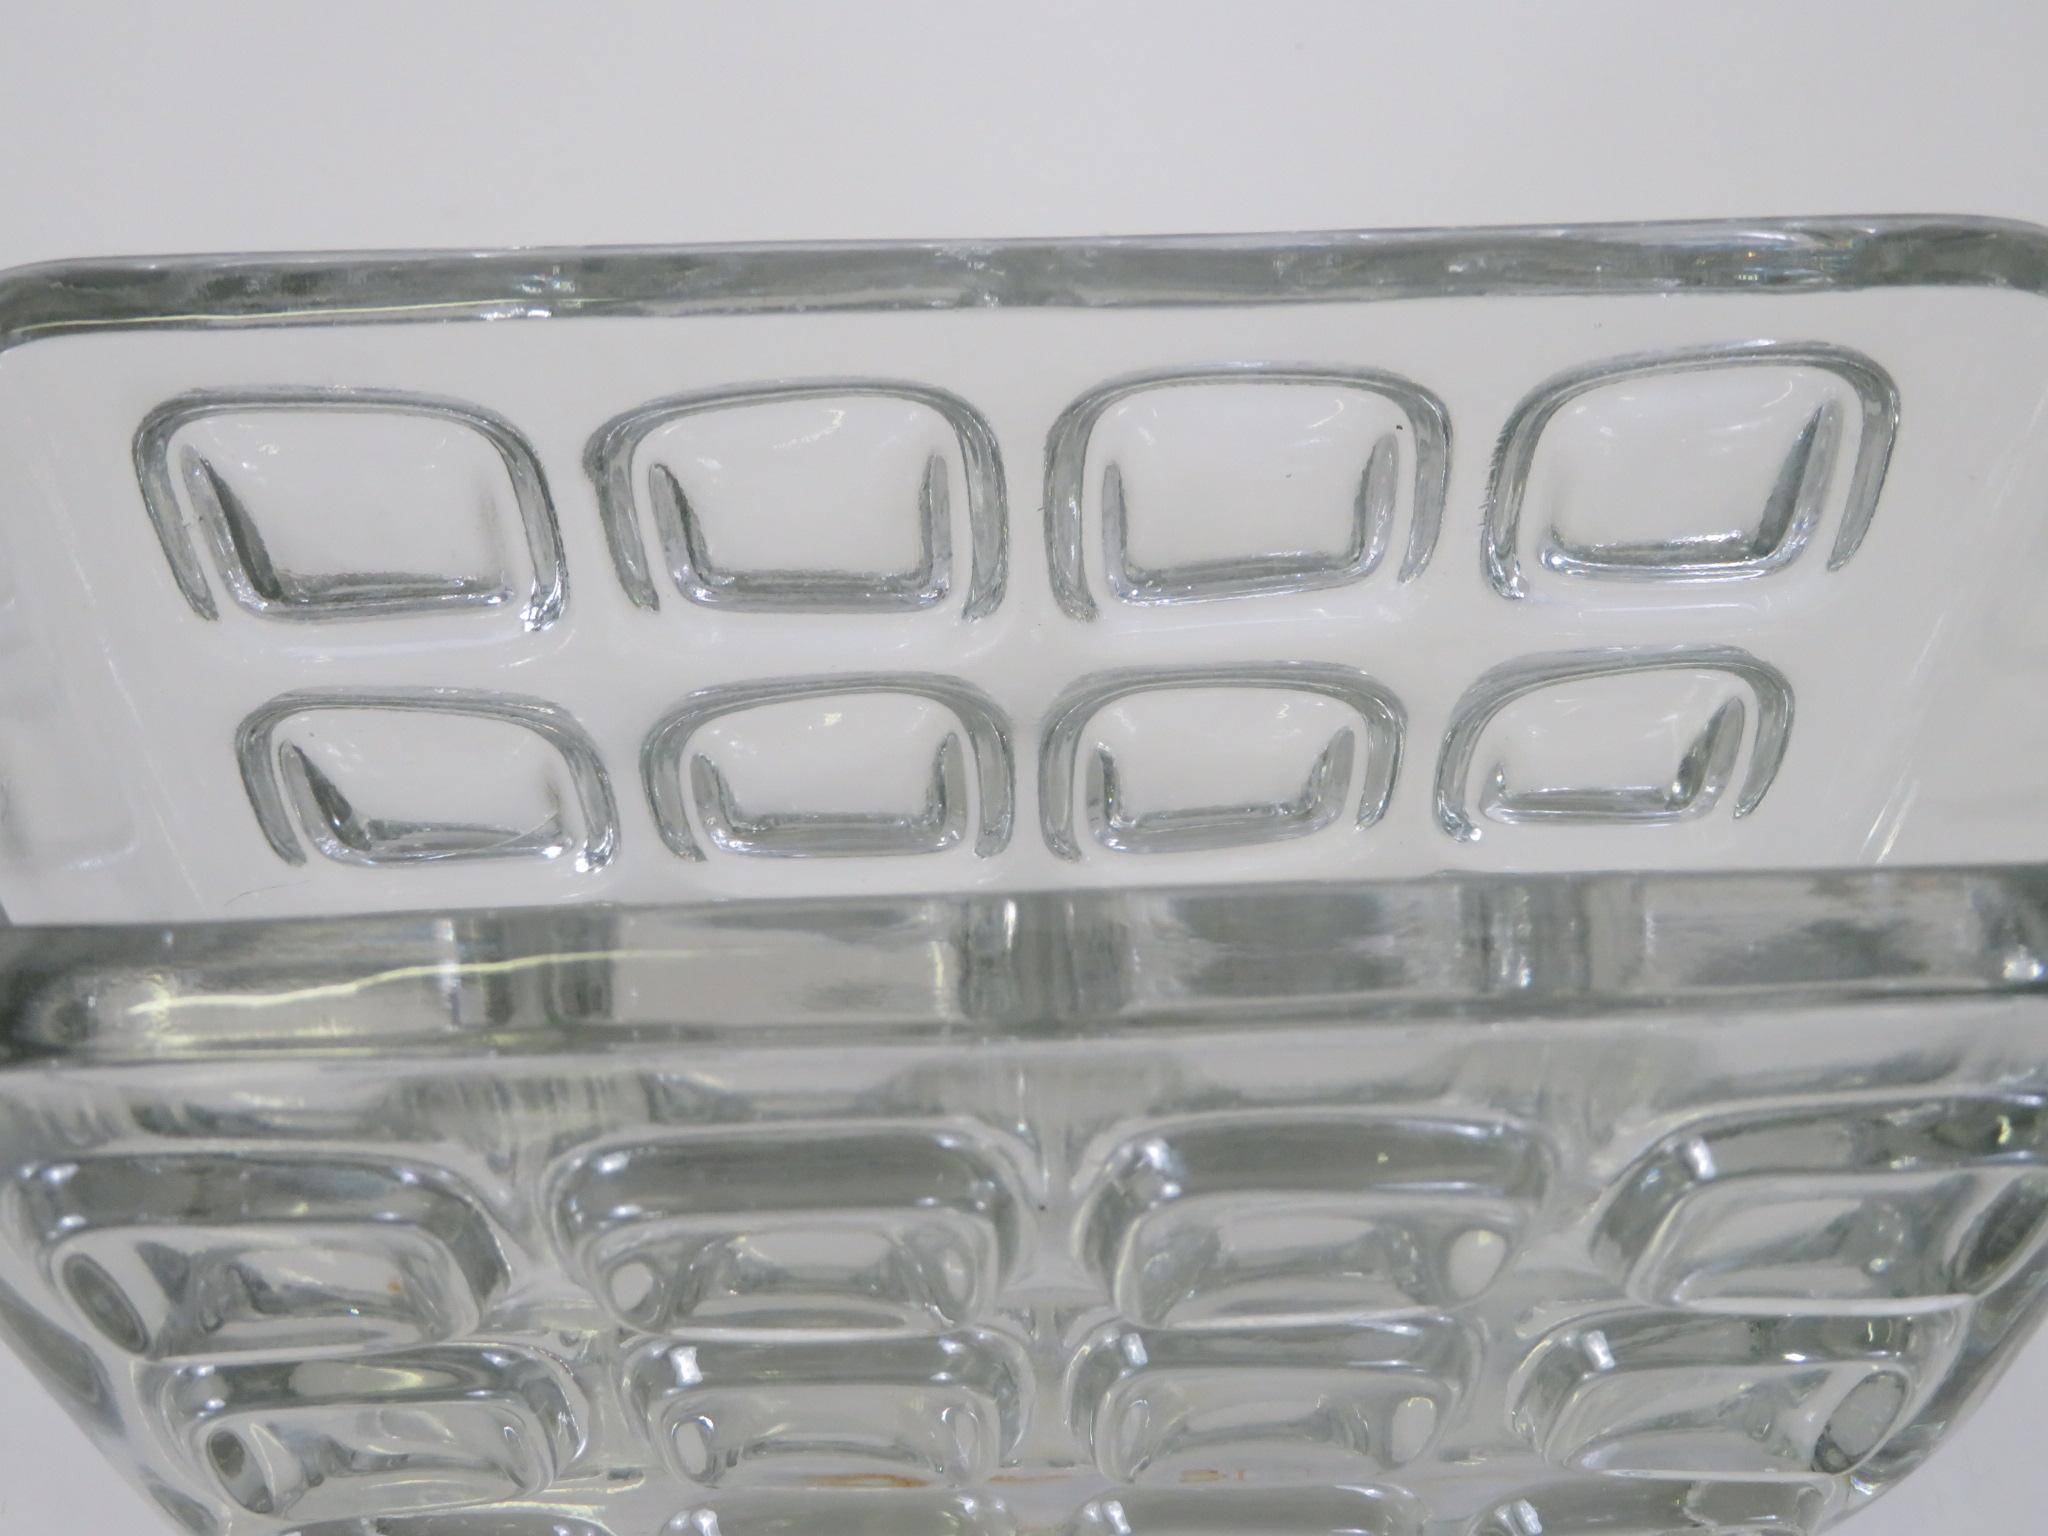 Modern Frantisek Vizner Sklo Union Libochovice Rectangular Pressed Glass Vessel In Good Condition In Miami, FL